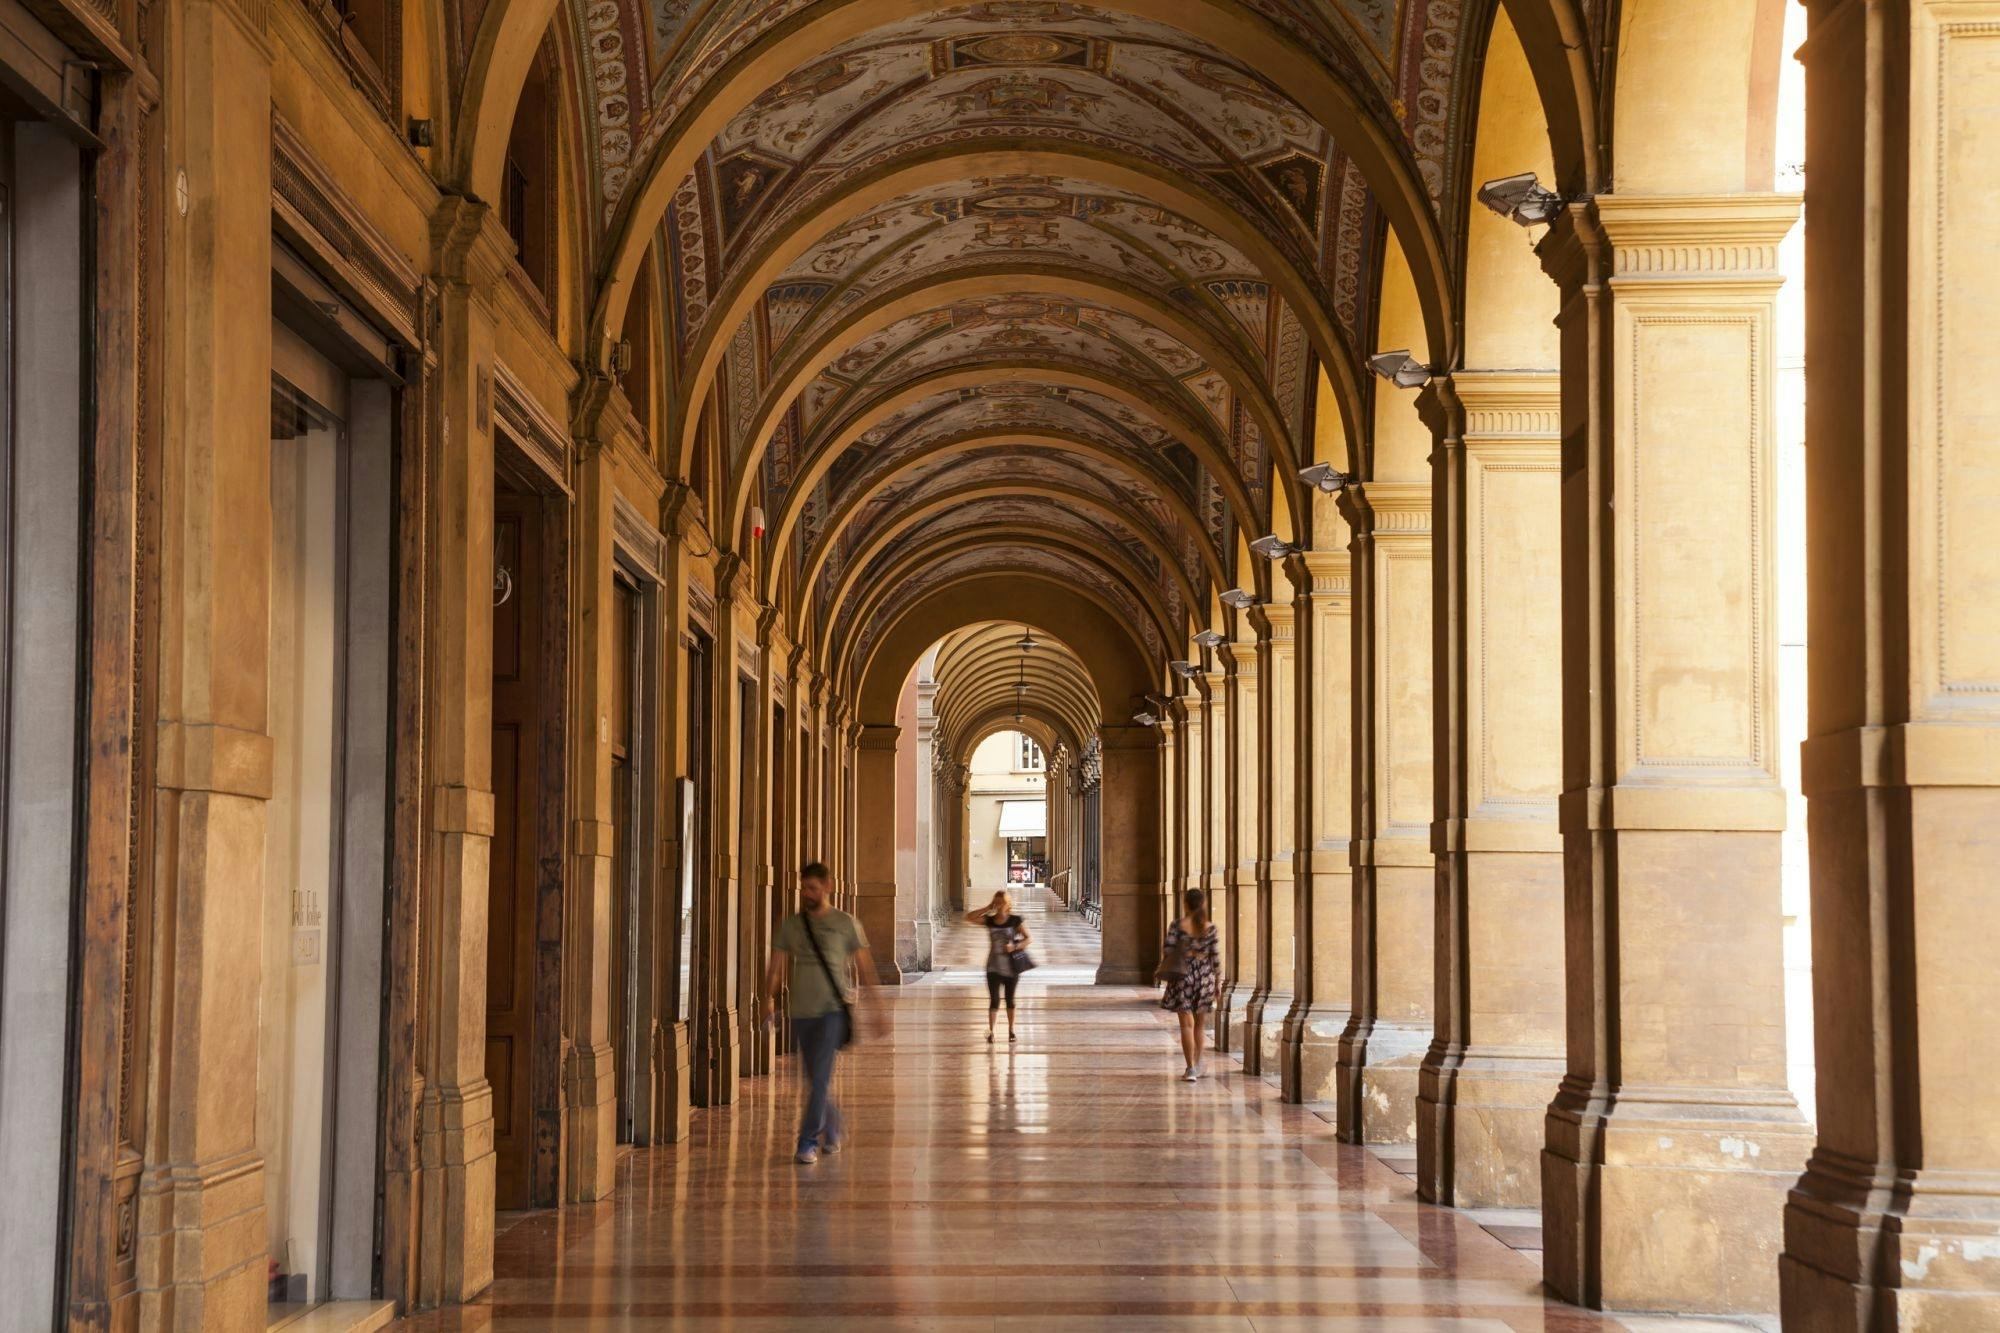 Visite guidée des Portici di Bologna et de la basilique San Luca